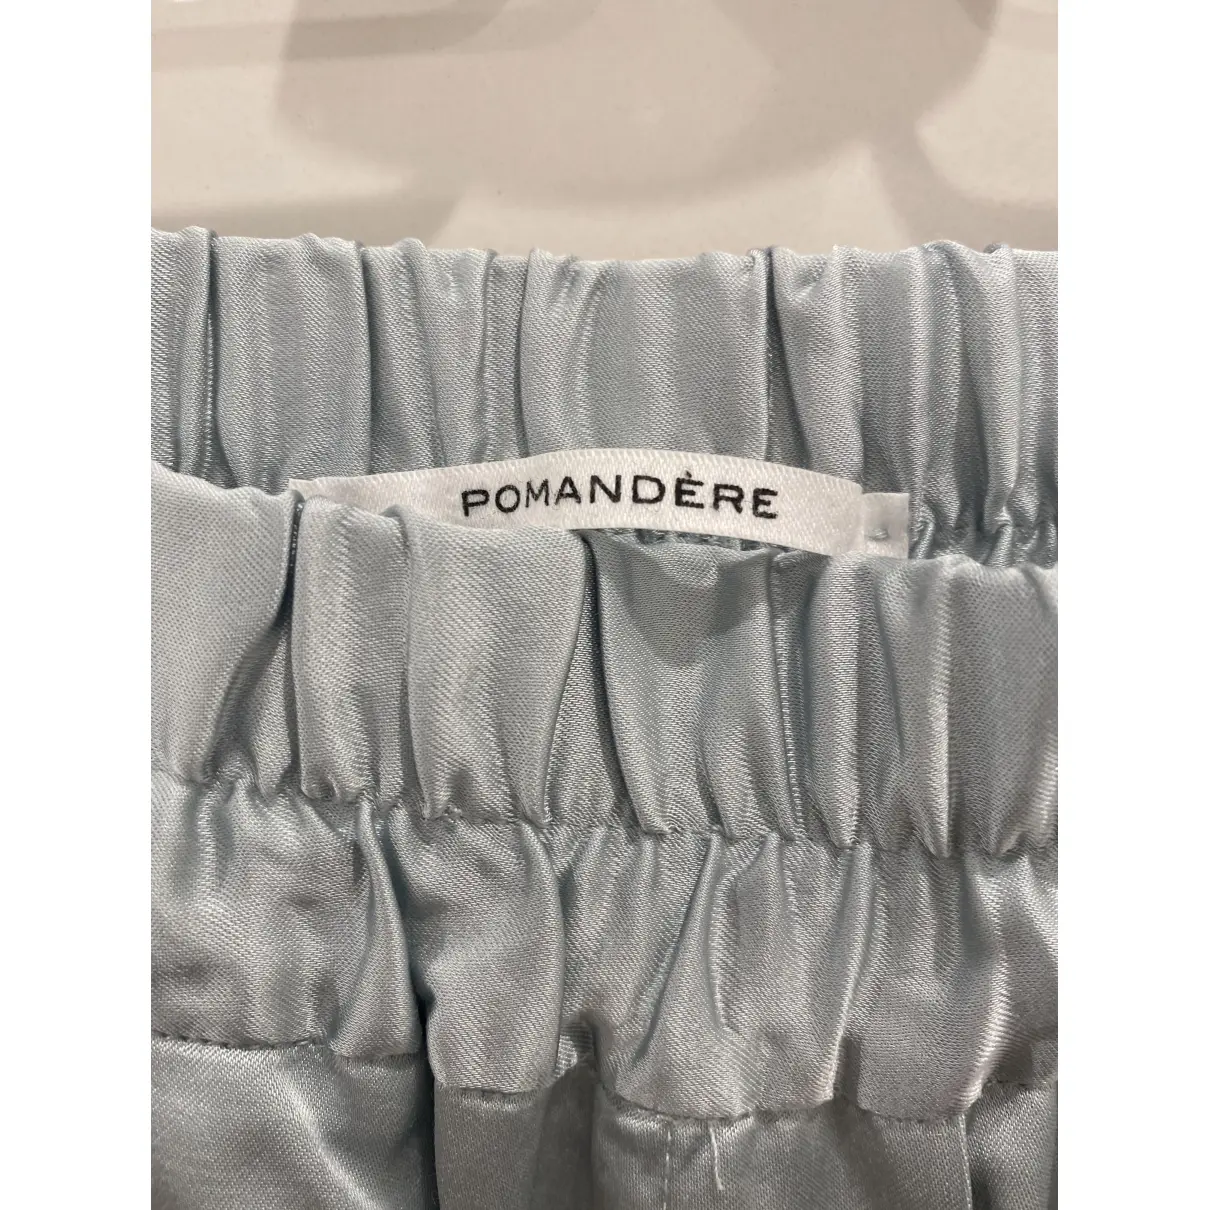 Buy Pomandère Large pants online